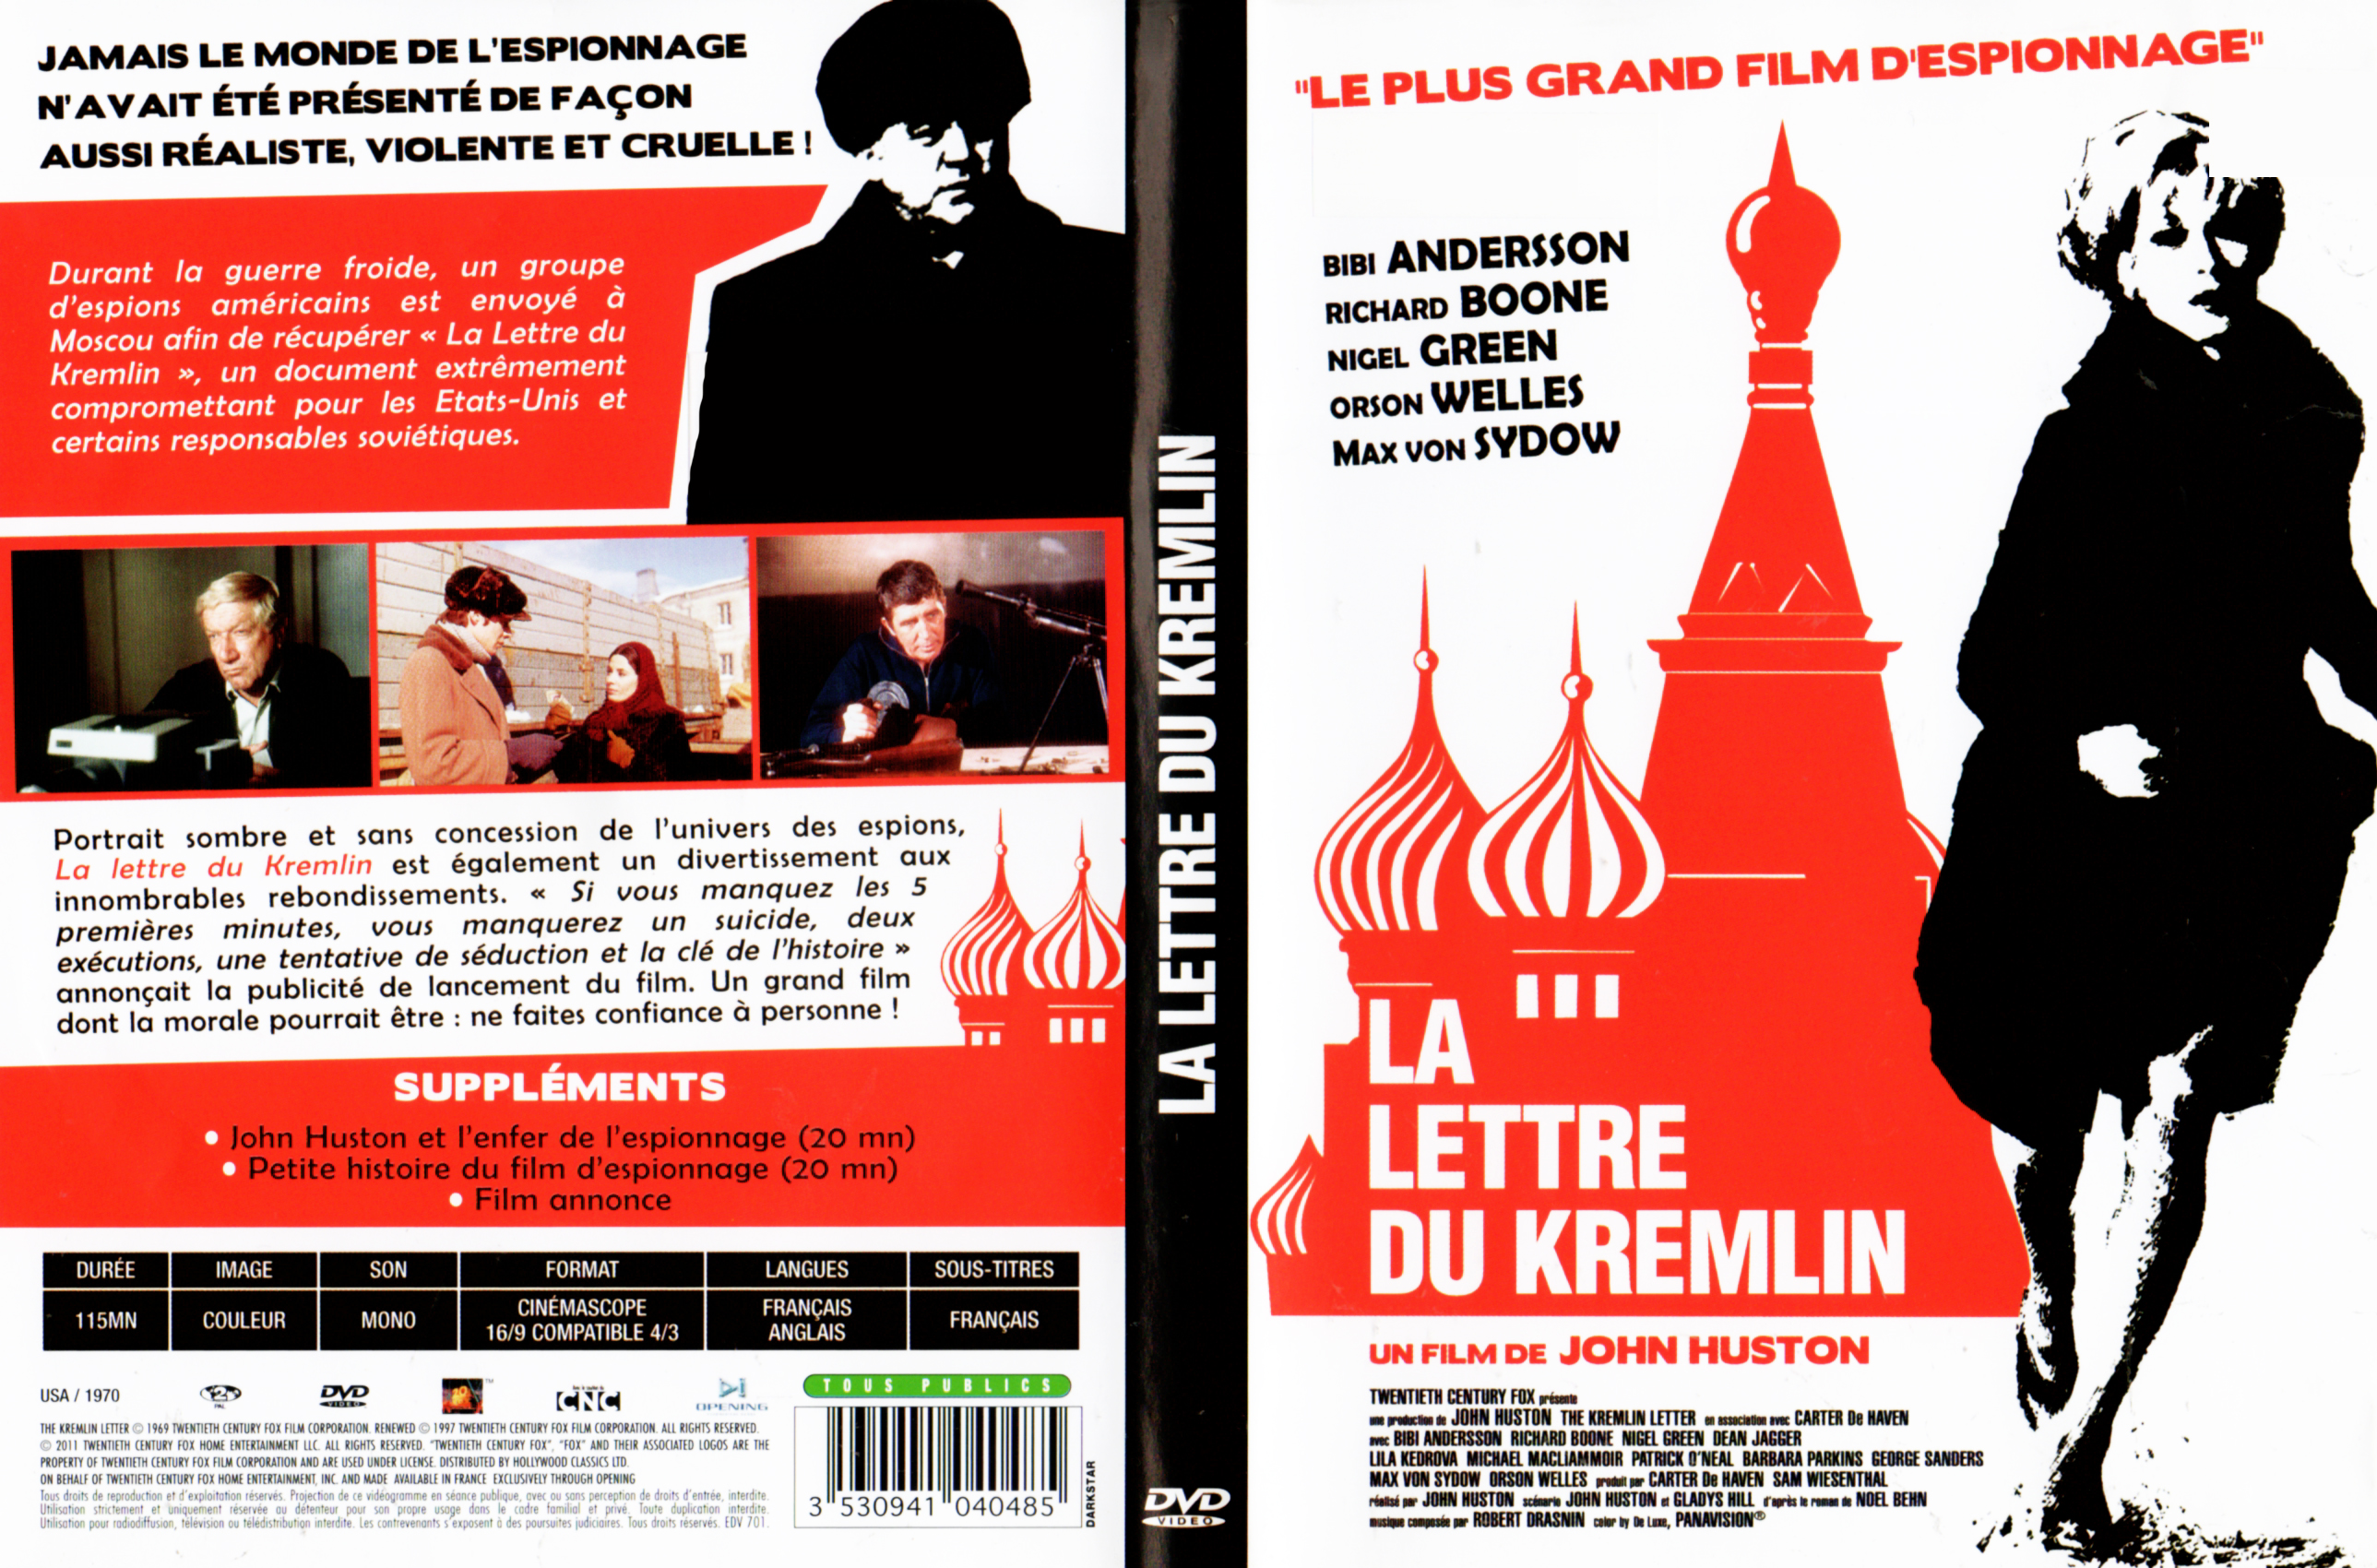 Jaquette DVD La Lettre du Kremlin